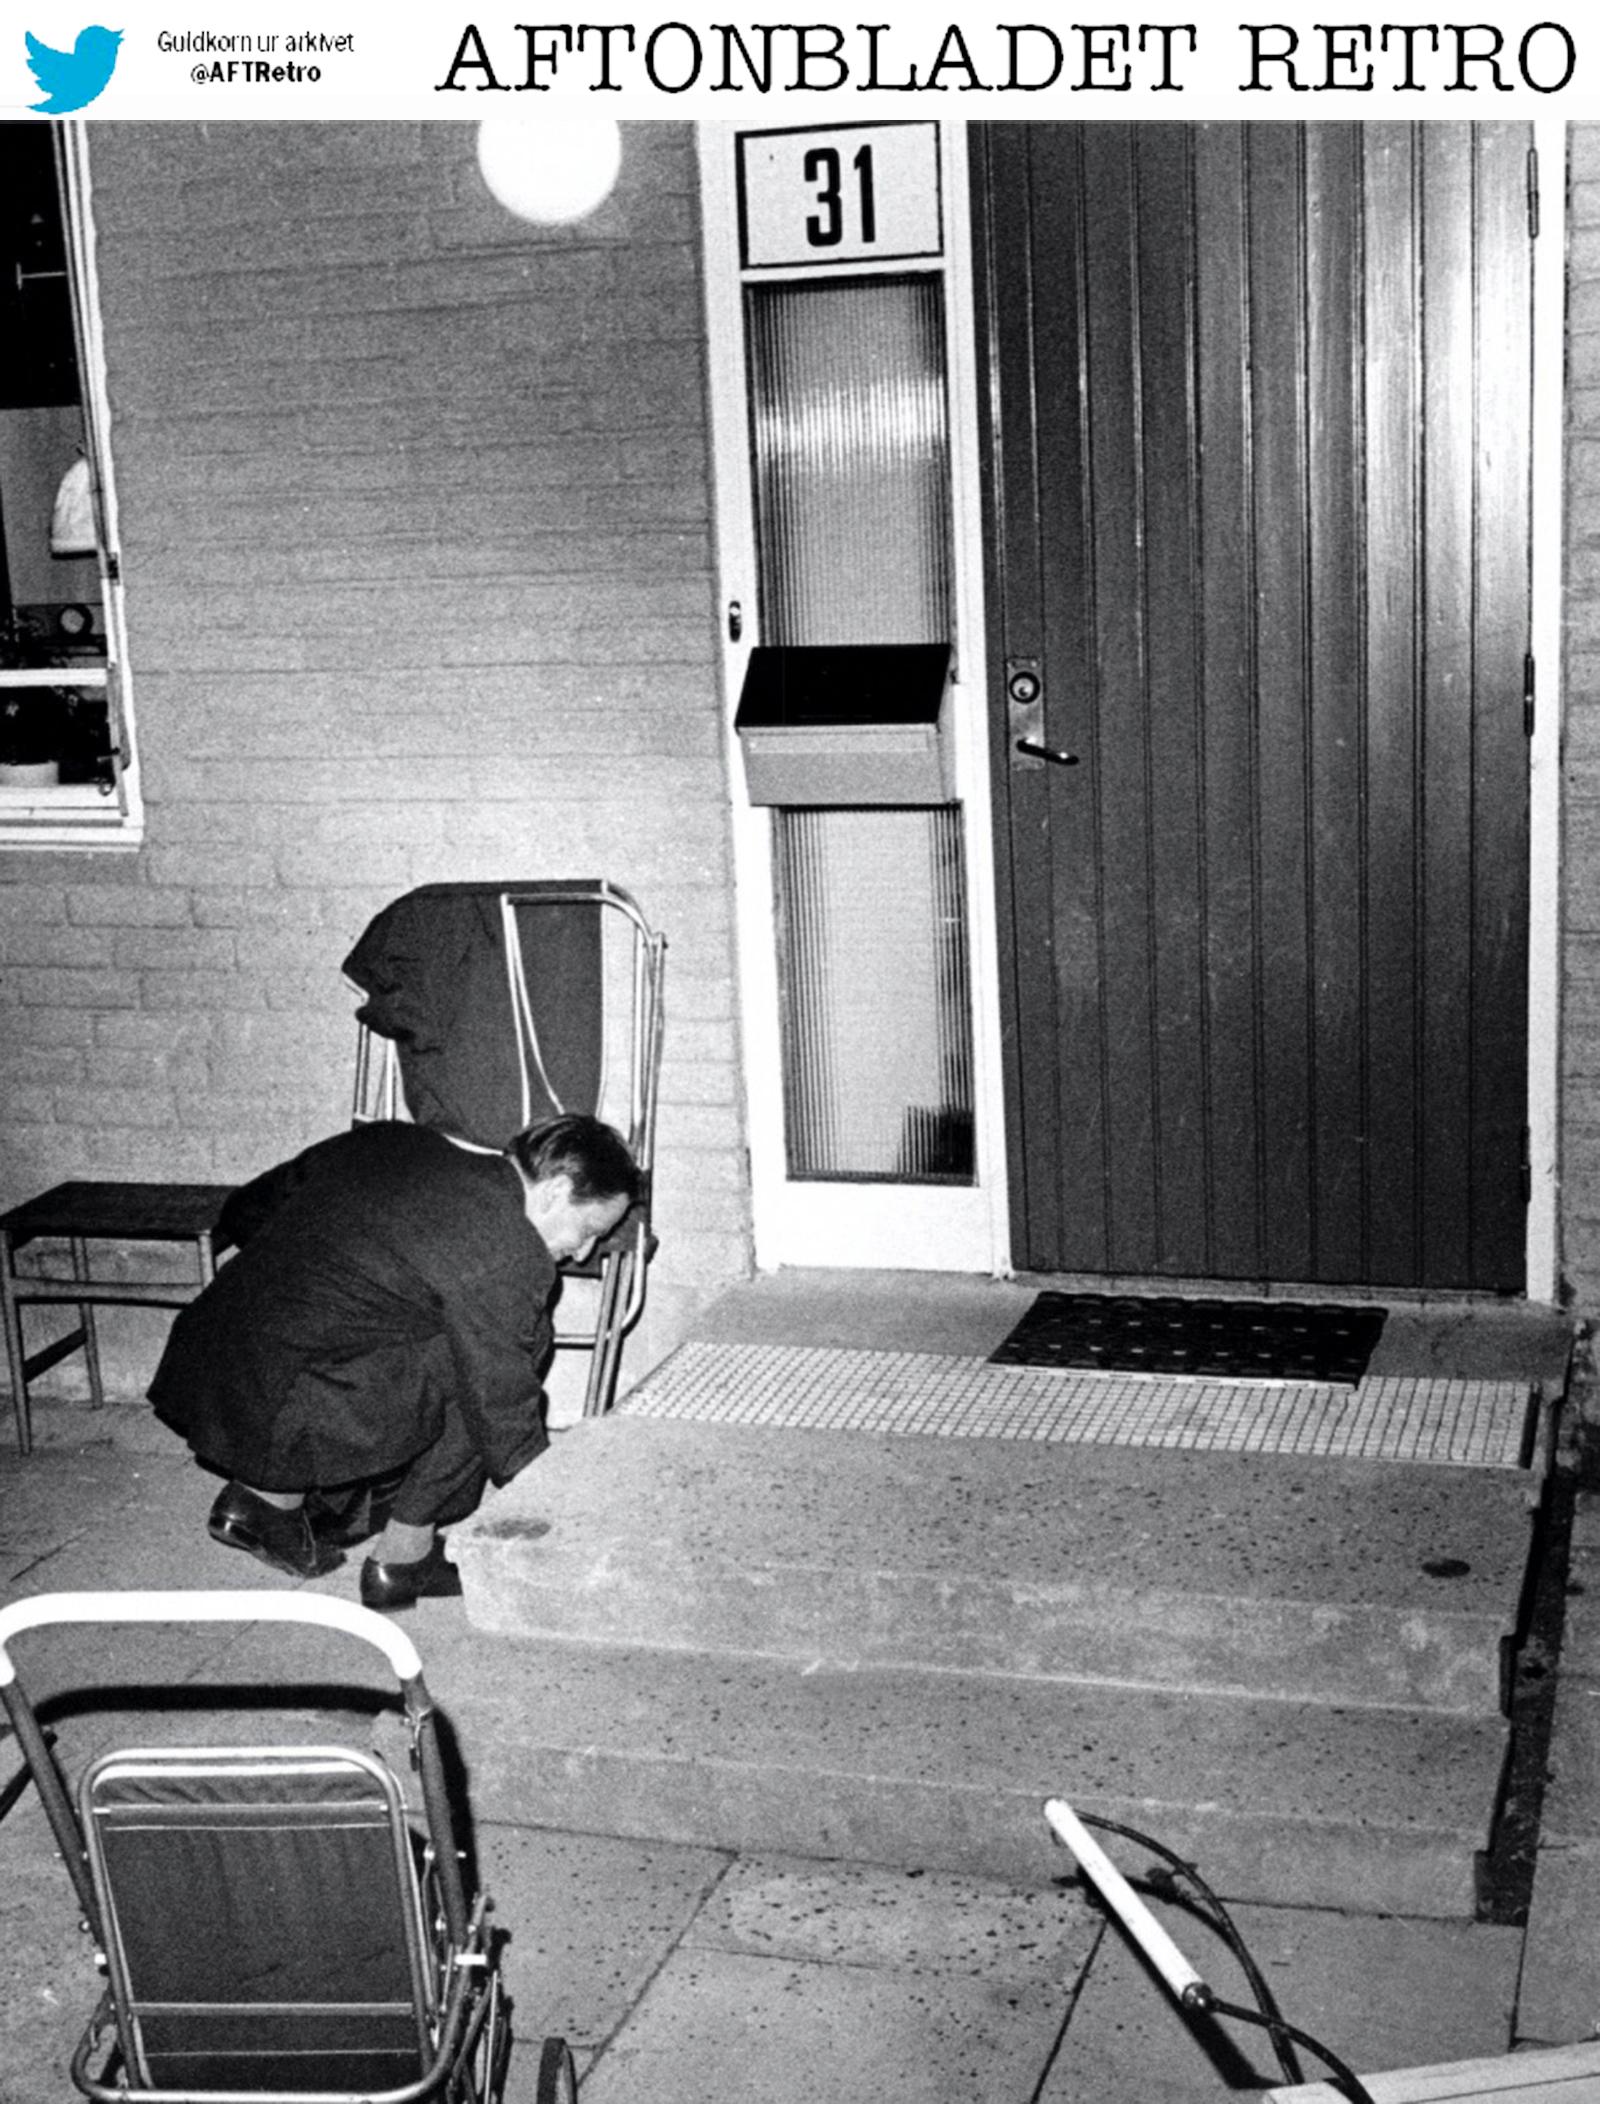 På 1970-talet såg säkerheten lite annorlunda ut för våra toppolitiker. Efter valsegern 1970 grävde statsminister Olof Palme fram husnyckeln under farstubron där Lisbet lagt den.